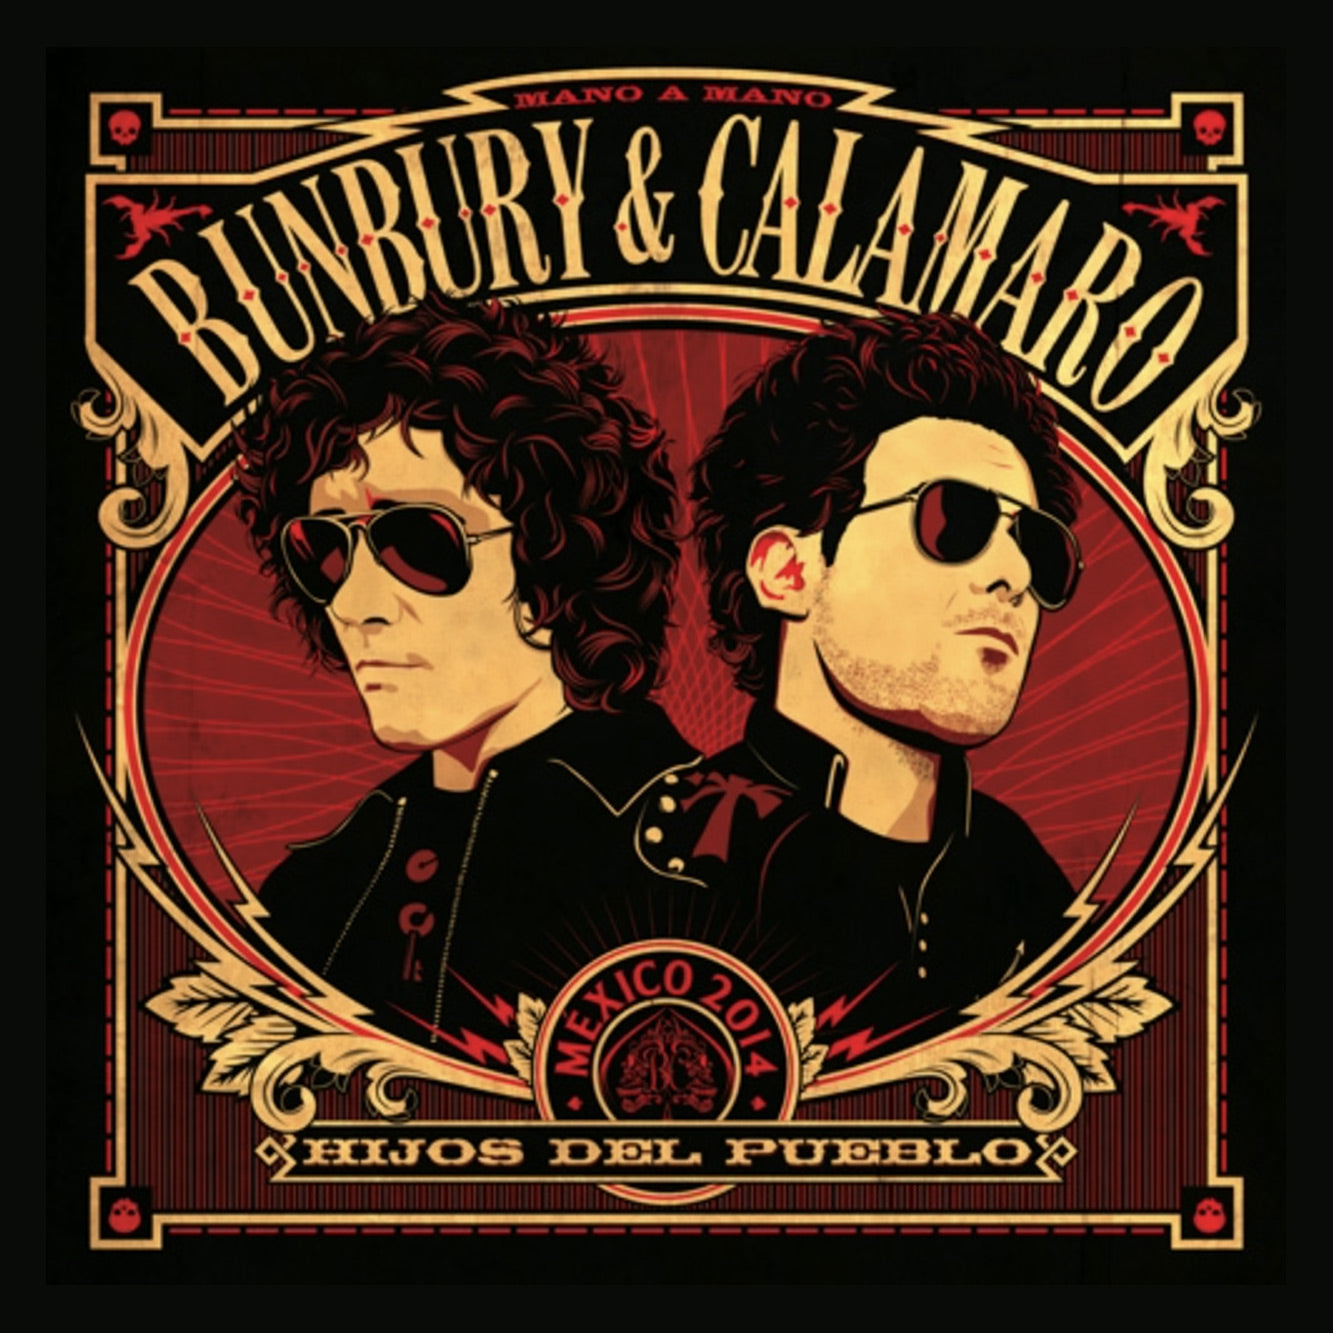 Enrique Bunbury & Calamaro - Hijos Del Pueblo (Vinilo 180 gramos) - Importado!